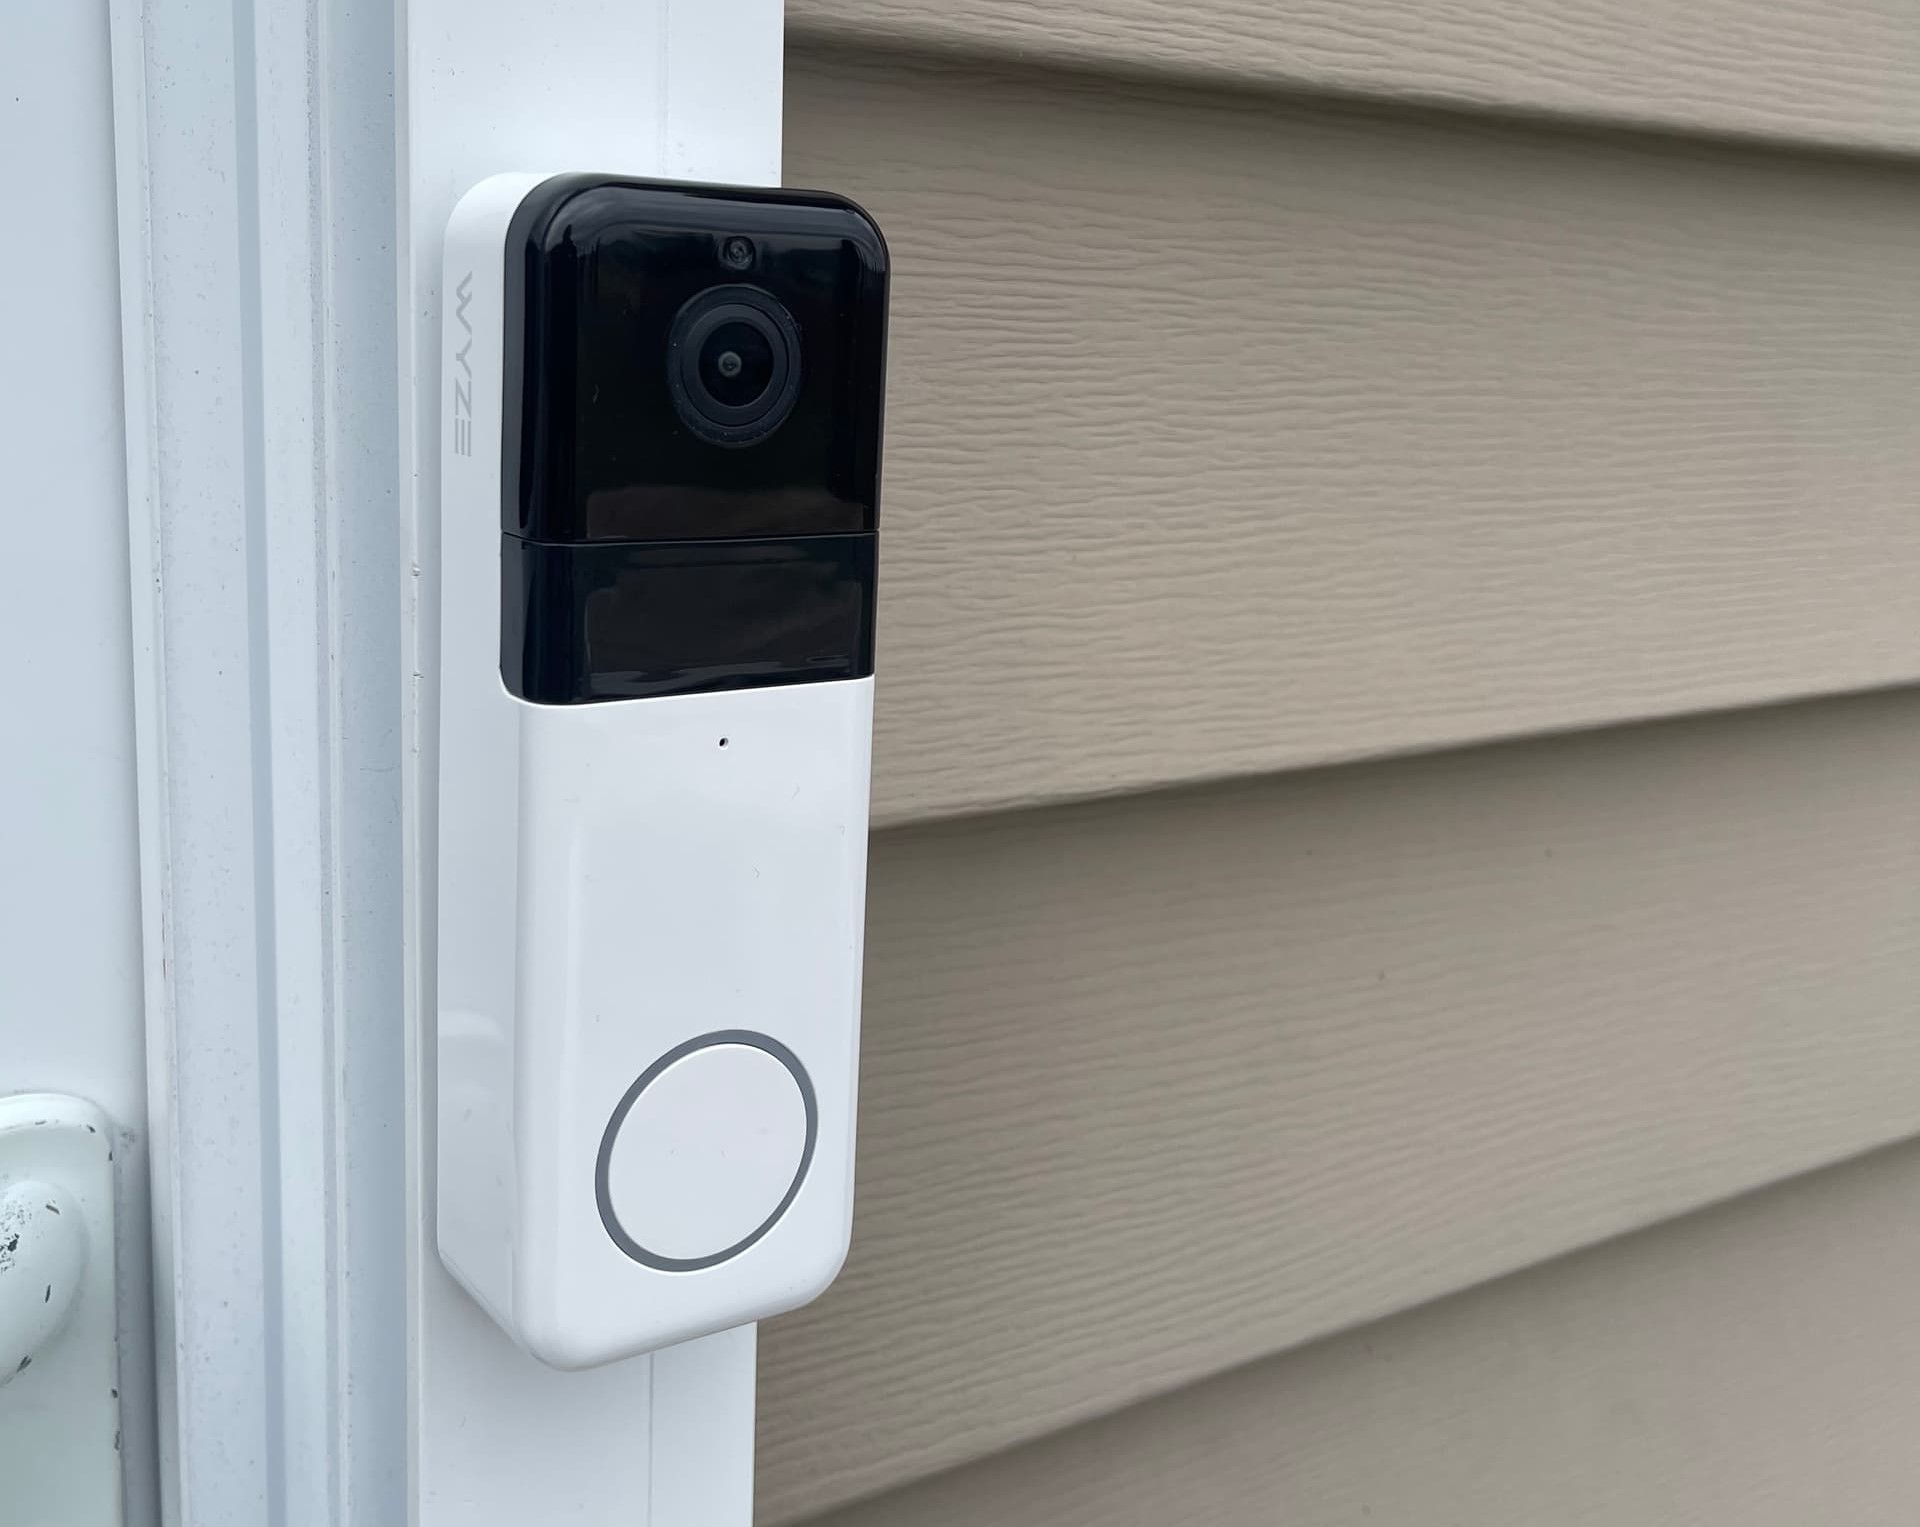 How To Reboot Wyze Doorbell